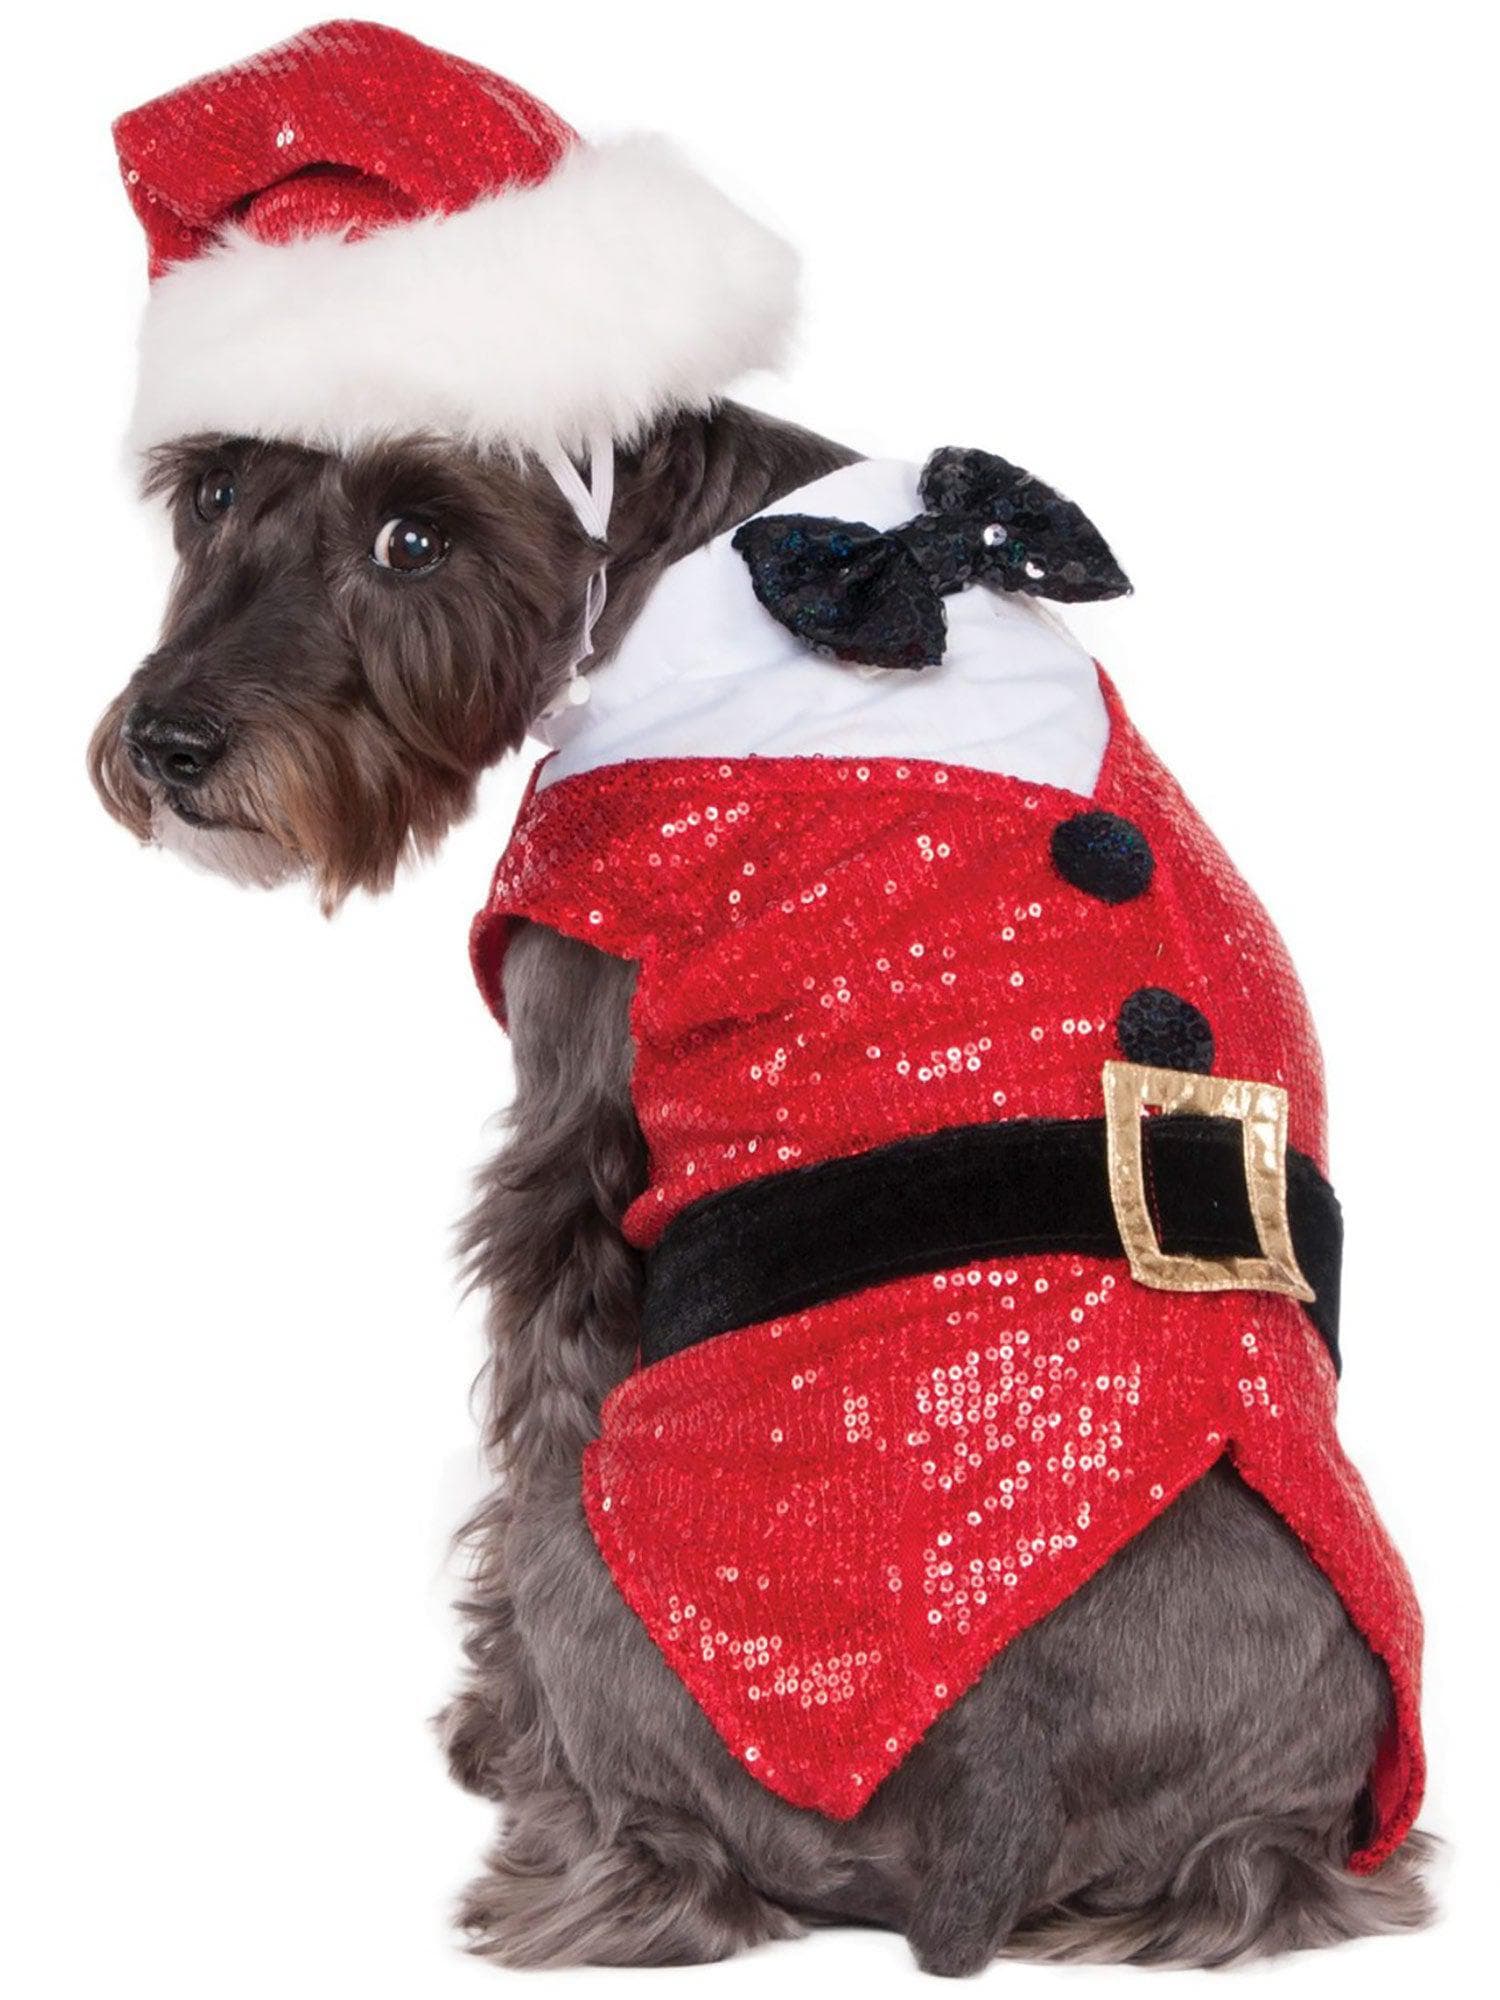 Pet Santa Sequin Costume - costumes.com